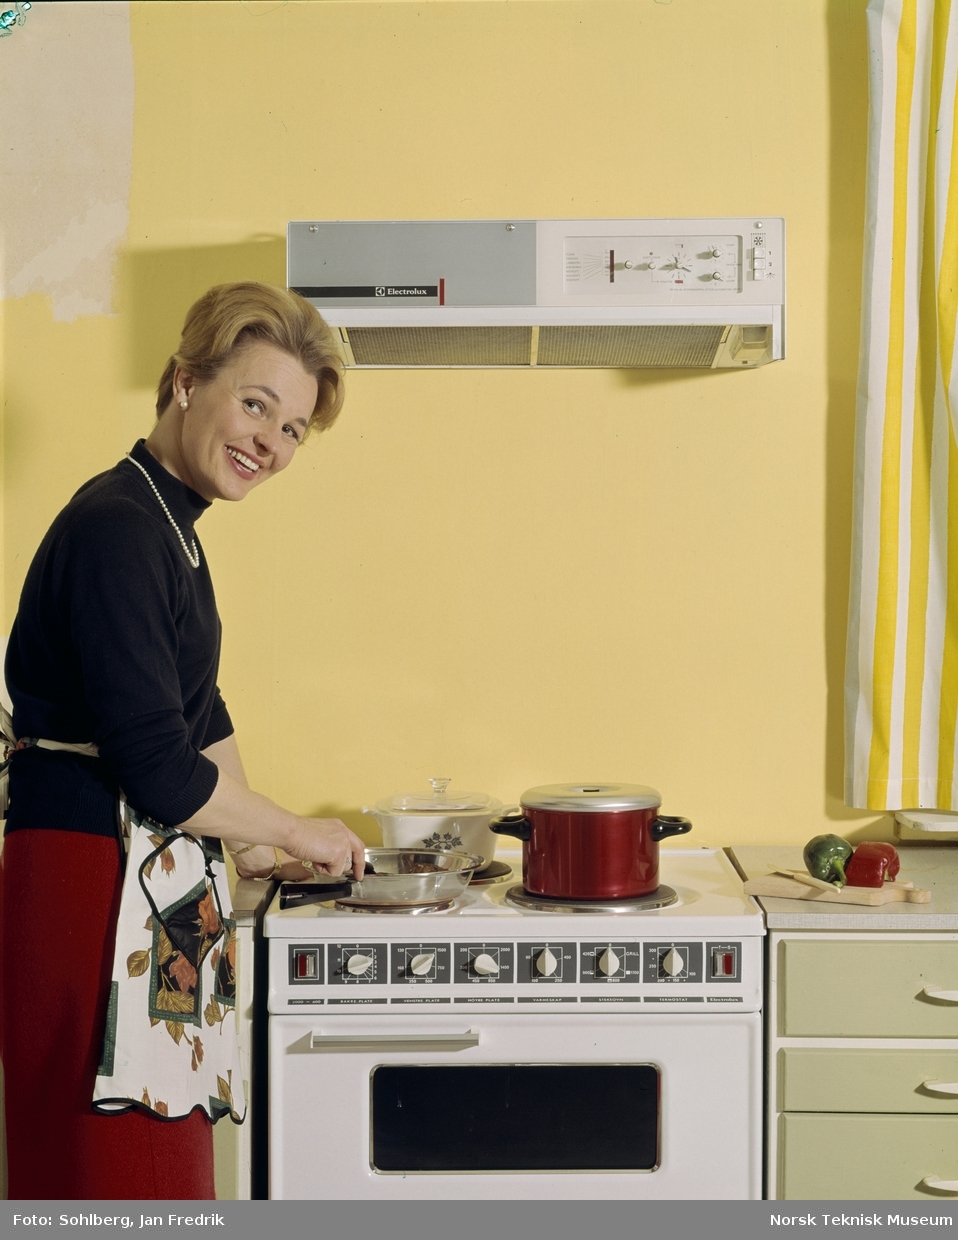 Reklamefoto for komfyr og vifte fra Elektrolux. Med moderne kjøkkenutstyr er livet som husmor ganske enkelt. En smilende kvinnelig modell lager mat ved komfyren.